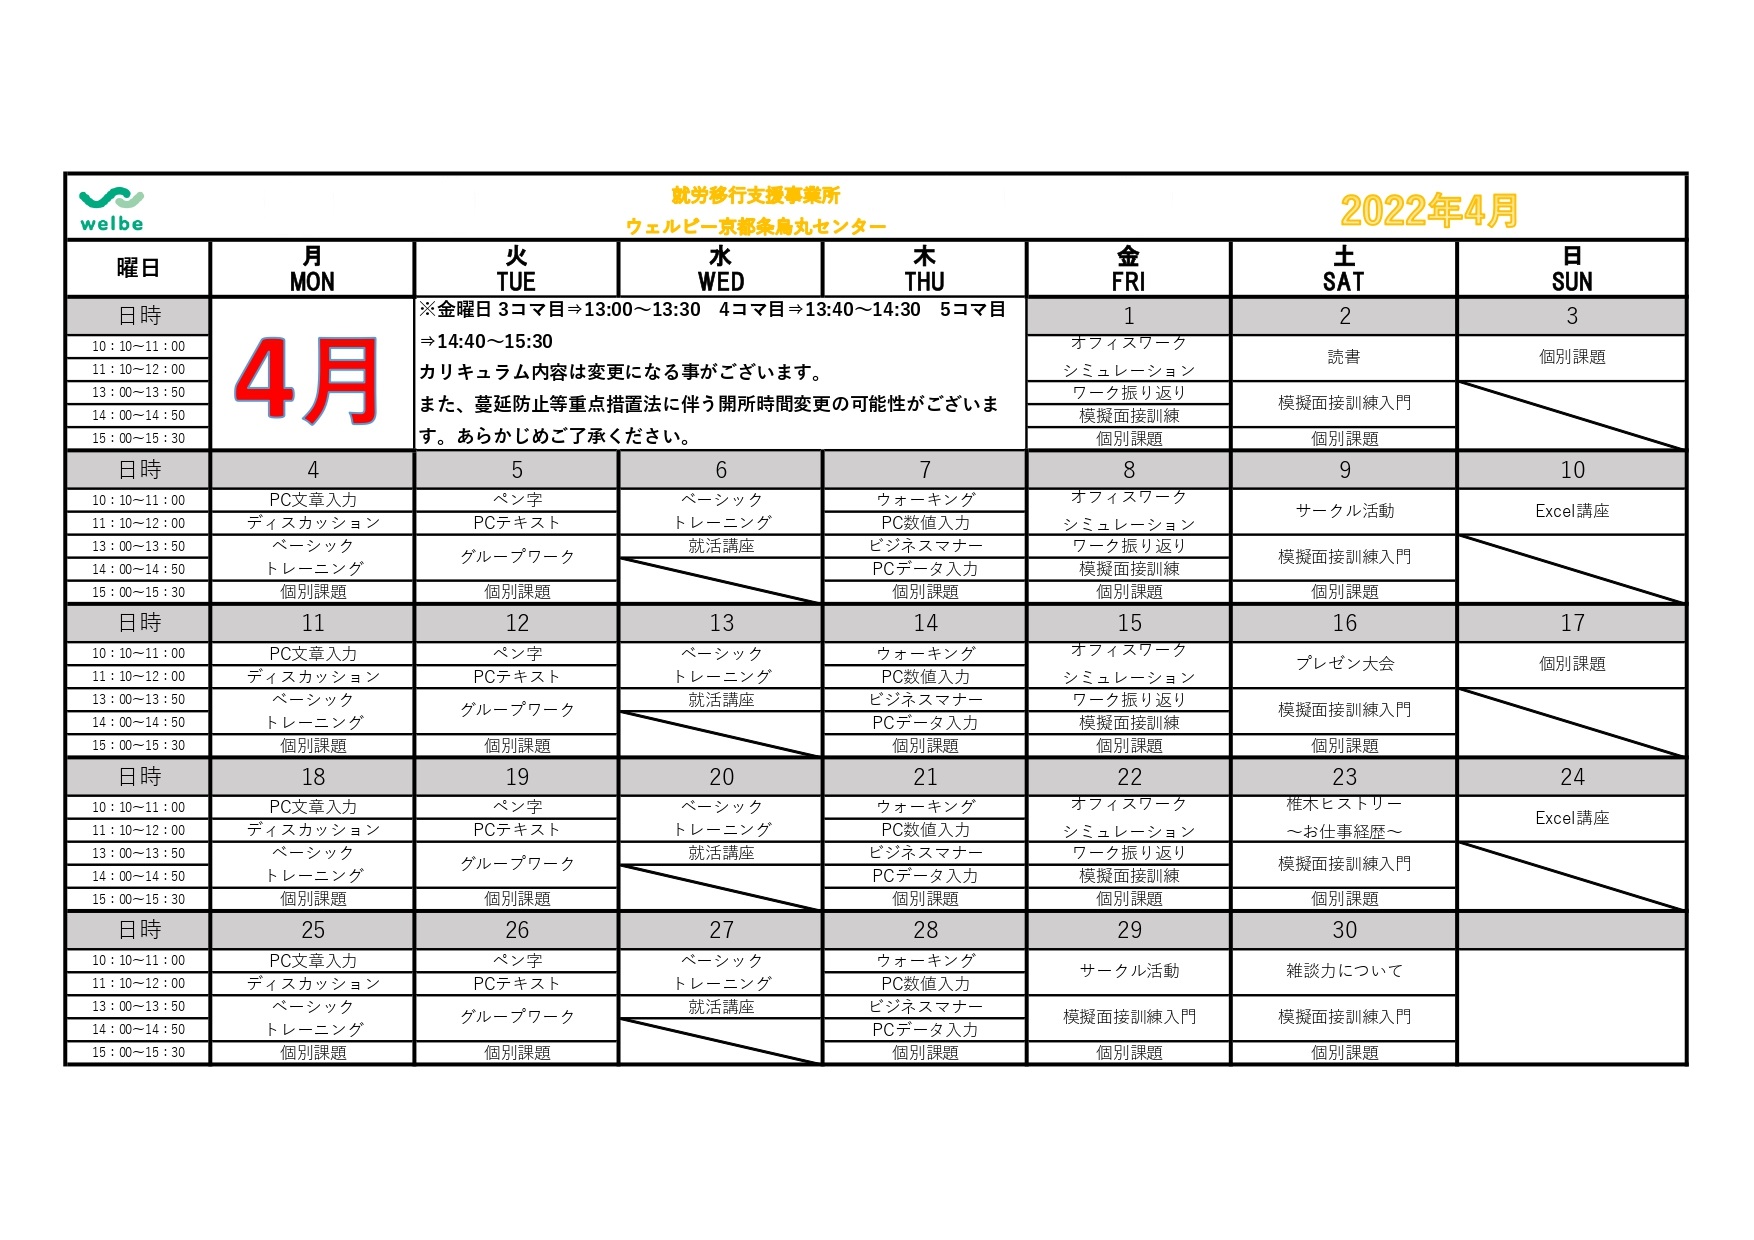 ウェルビー京都四条烏丸センターカリキュラムカレンダー表+2022年4月_page-0001